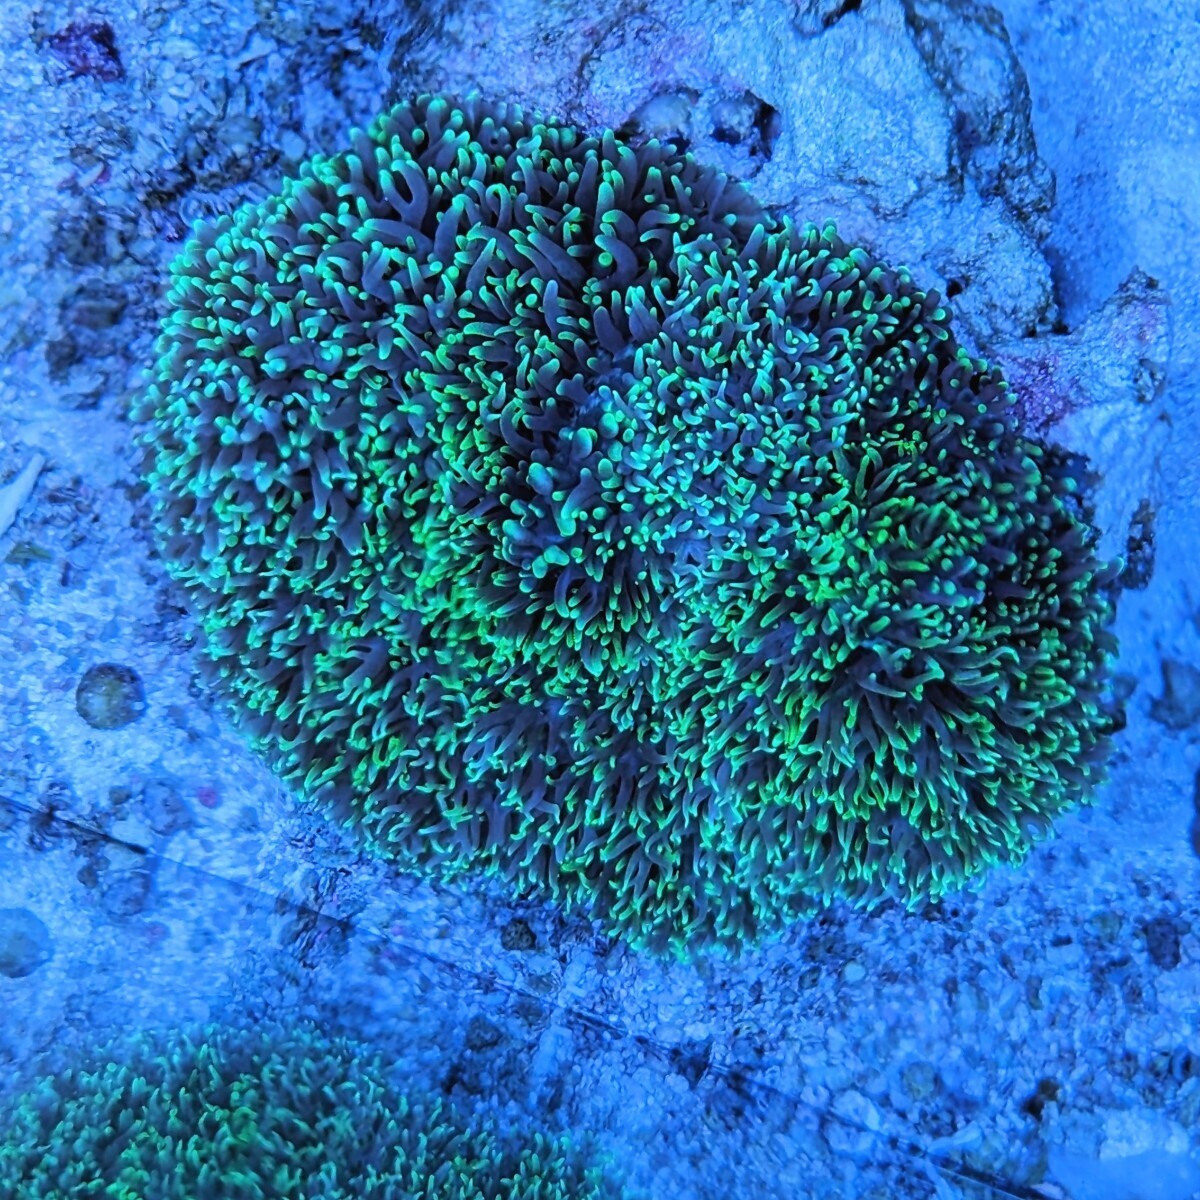 ヘアリーディスクコーラルsp.先メタグリーン アクアリウム コーラル サンゴ 配送事故保証付き 匿名配送 4/15FD コーラルレンズを使い撮影の画像7